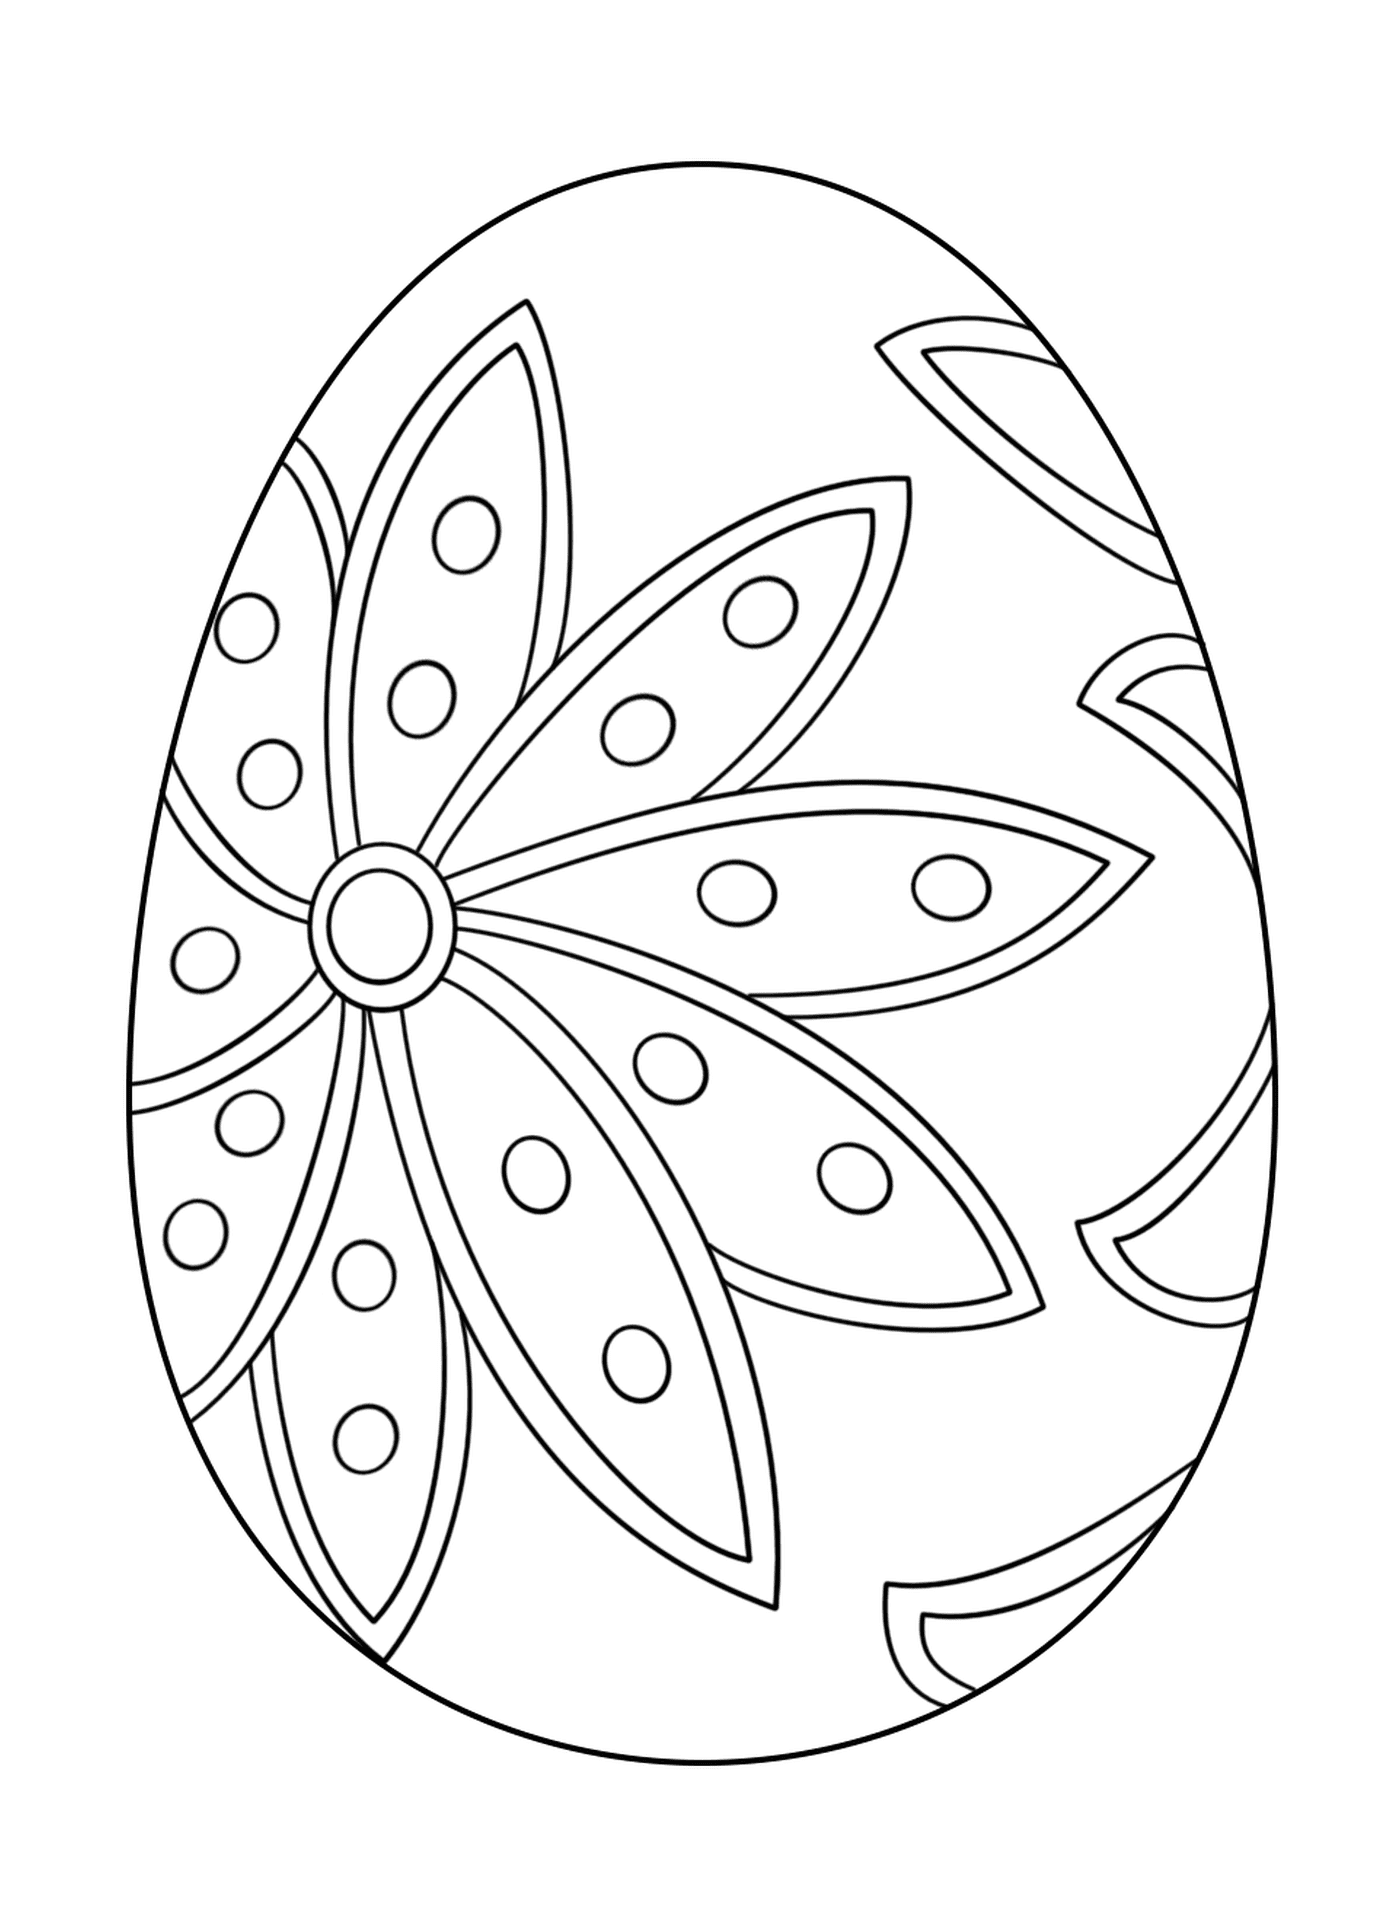  Ovo de Páscoa elegante com padrão floral 